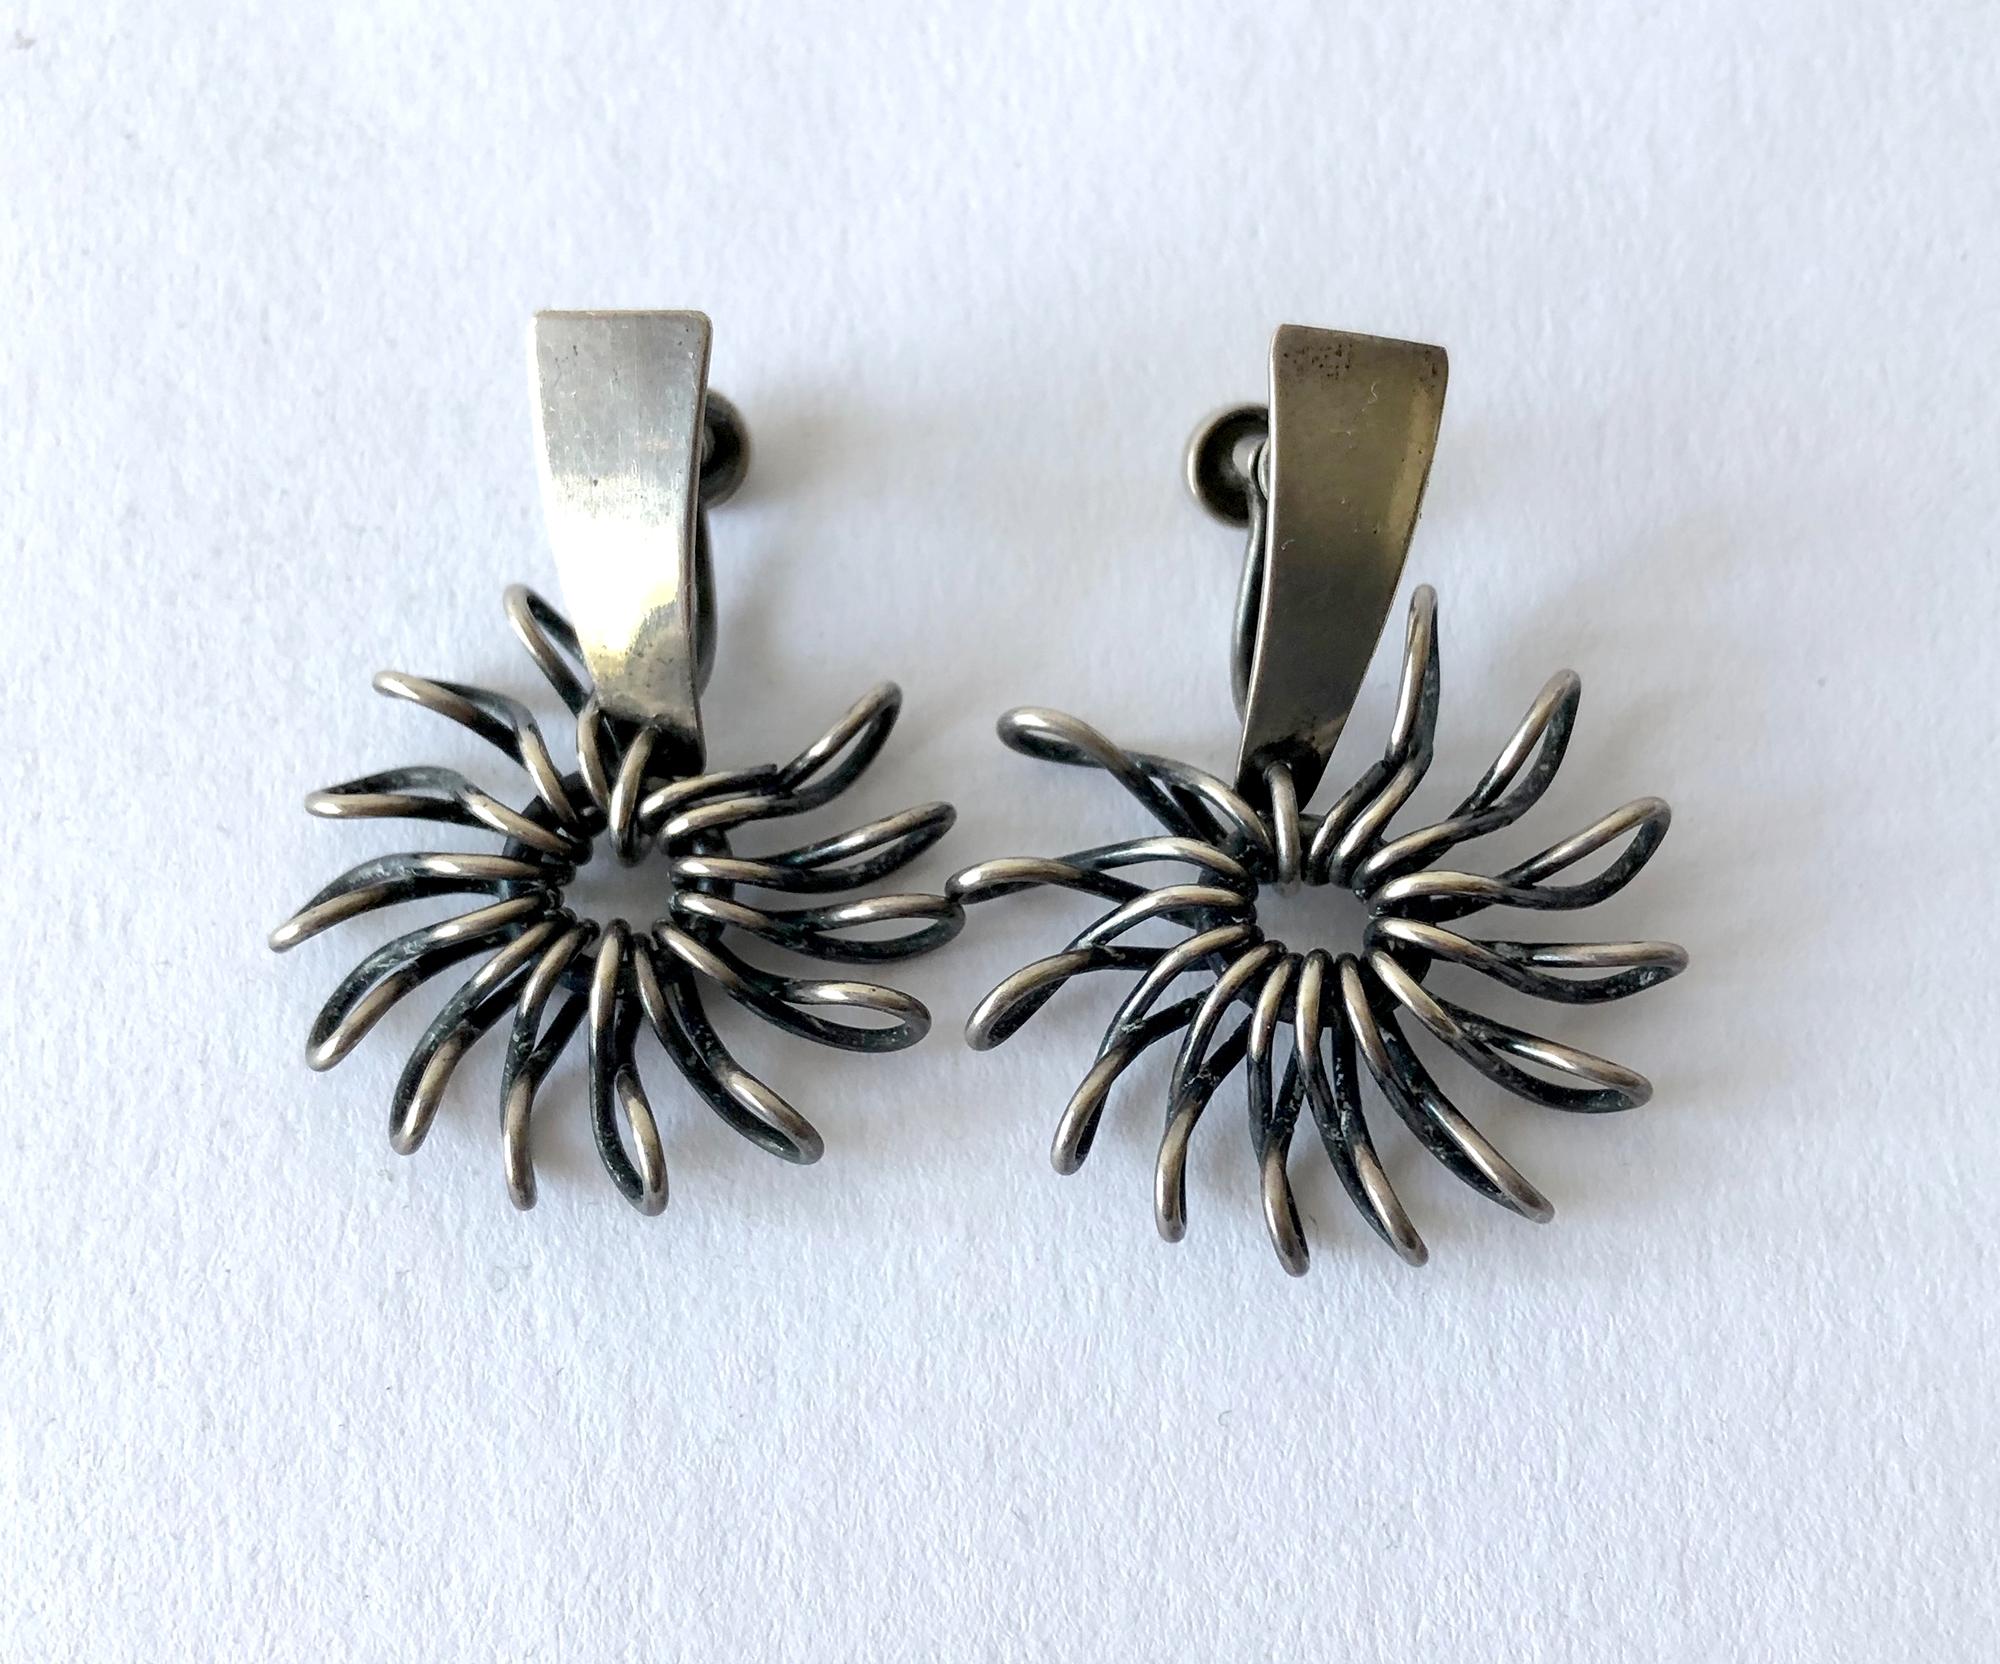 1950's American modernist squiggle earrings created by Sara.  Screwback earrings measure 1 1/2